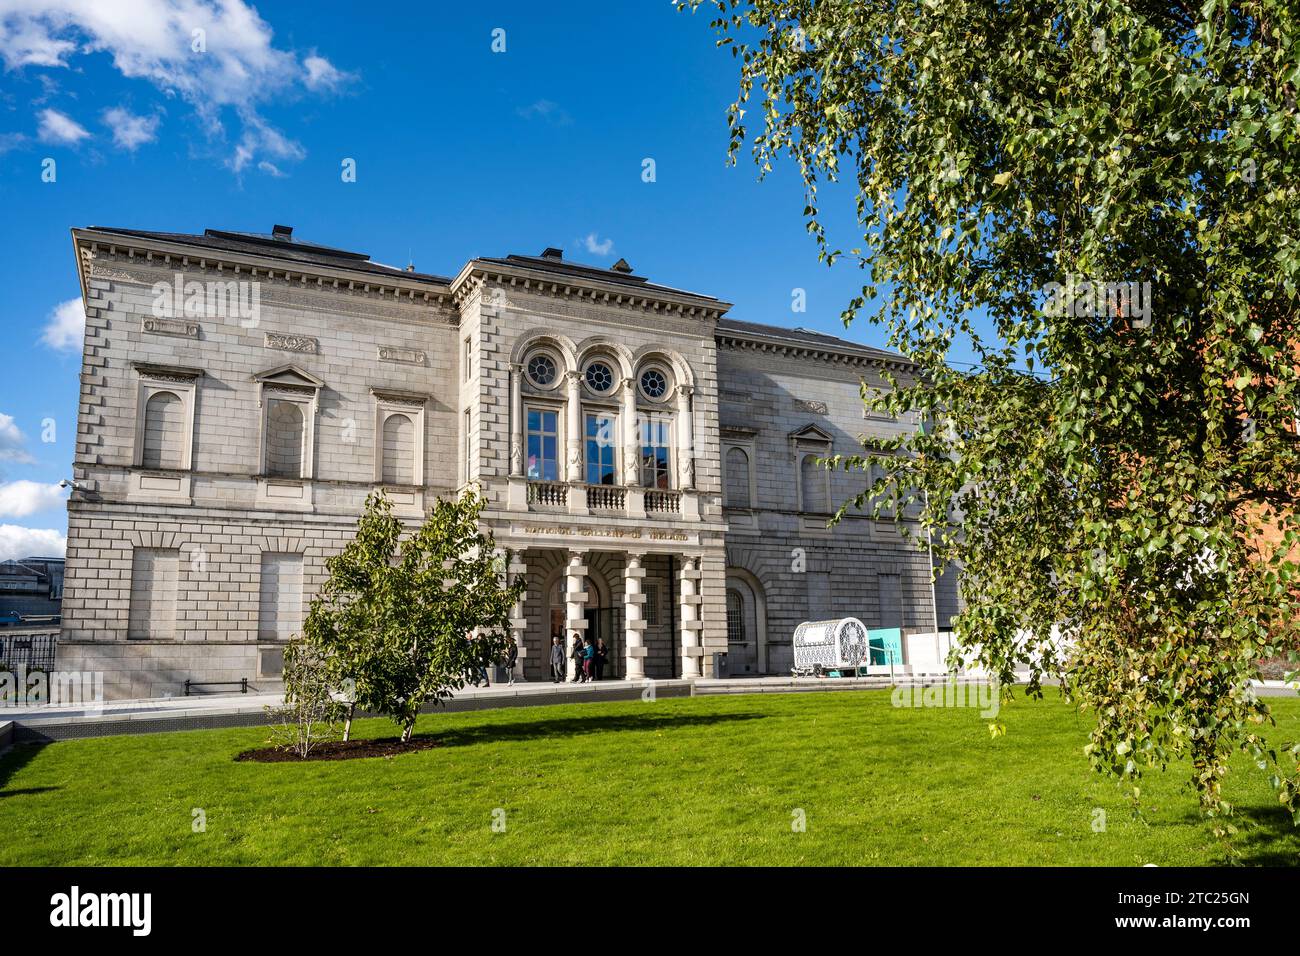 Fassade der National Gallery of Ireland, Kunstgalerie mit europäischer und irischer Kunst vom Mittelalter bis zur Gegenwart, im Stadtzentrum von Dublin, Irland Stockfoto